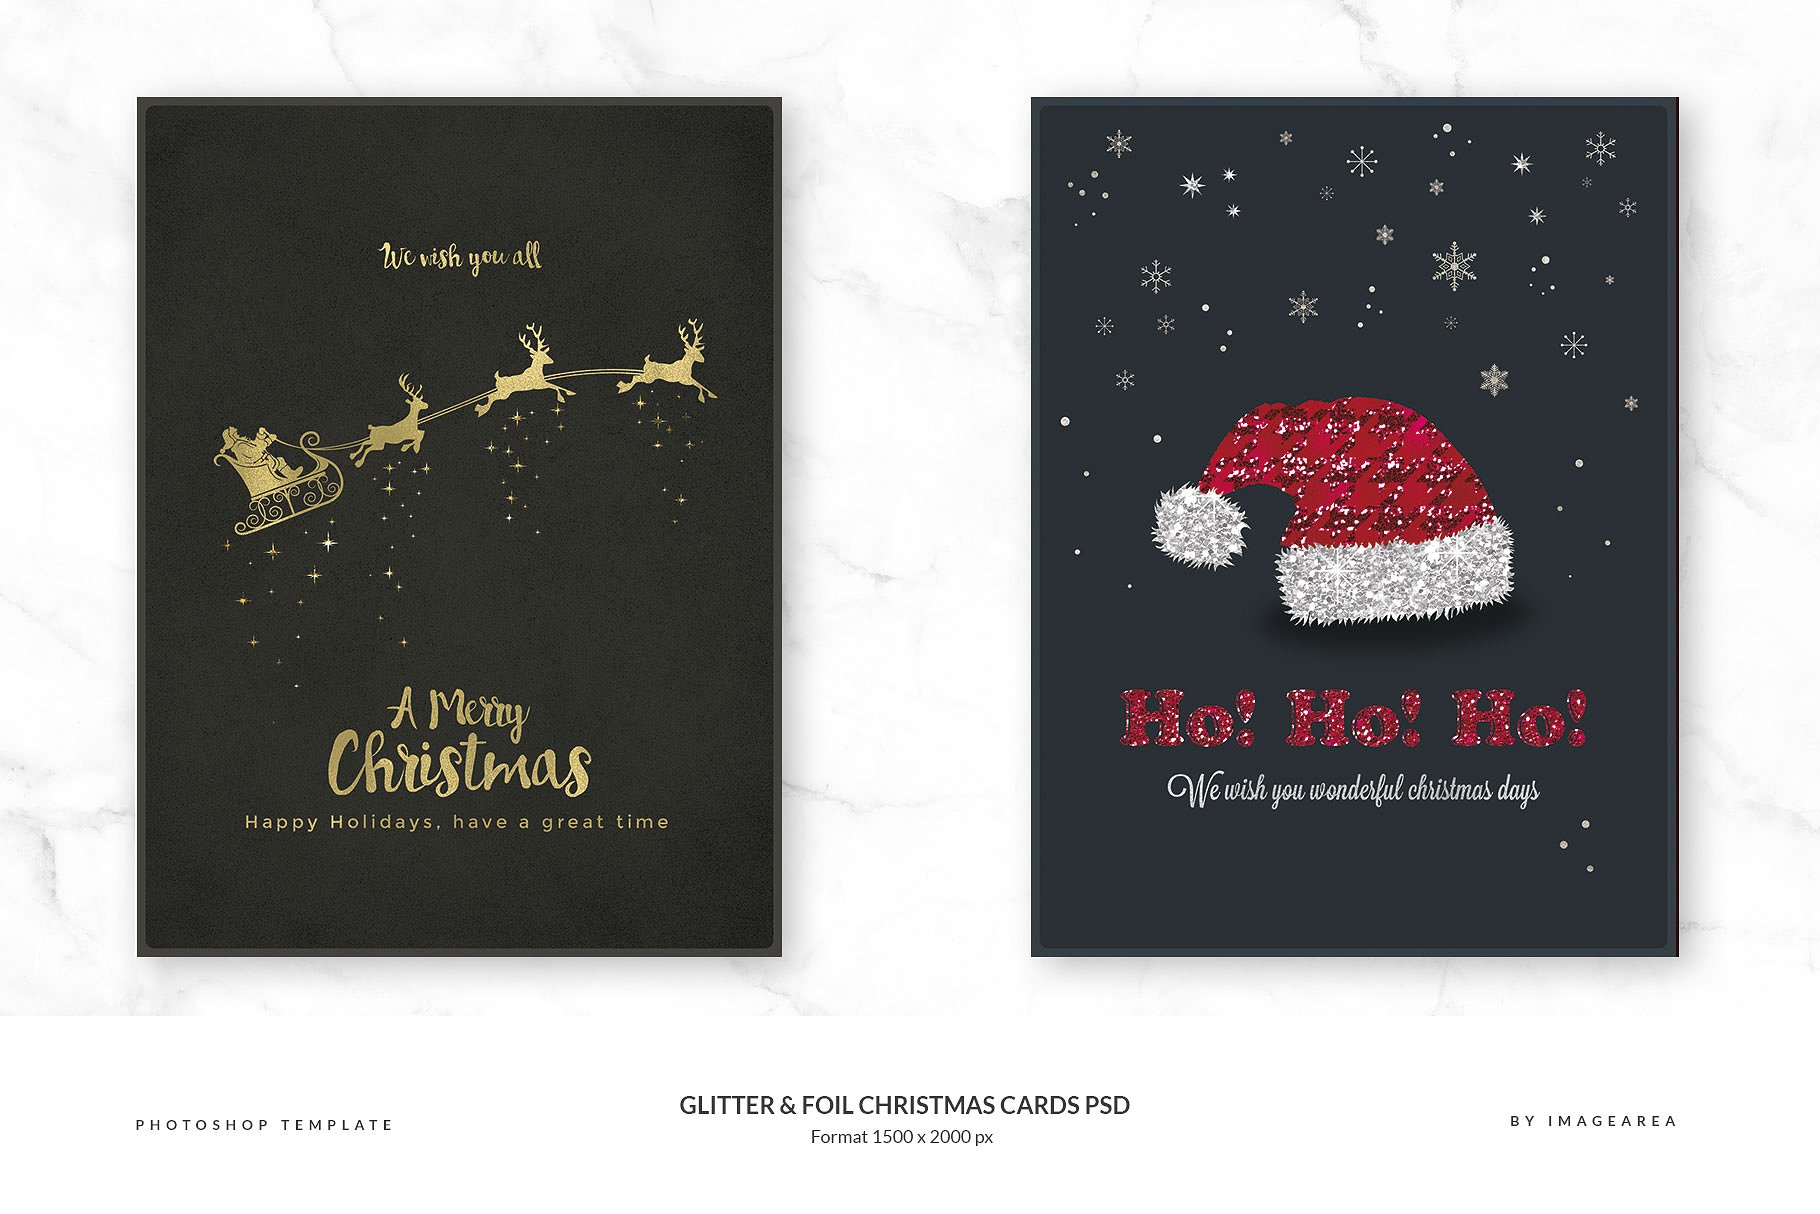 闪粉&金箔圣诞卡PSD模板合集 Glitter & Foil Christmas Cards PSD插图1